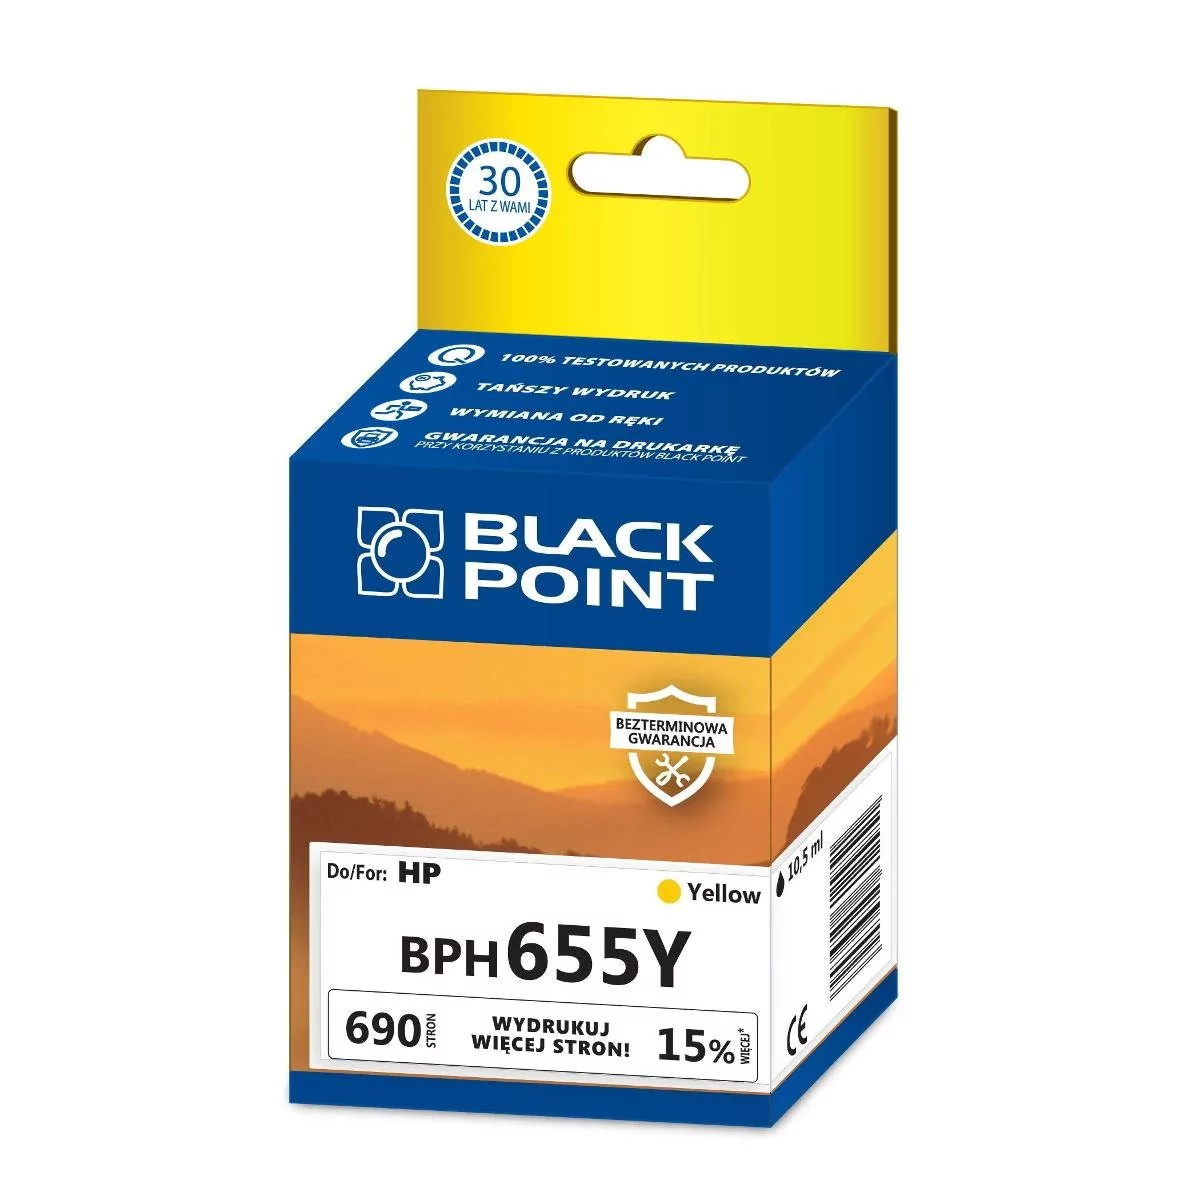 Black Point BPH655Y zamiennik HP CZ112AE